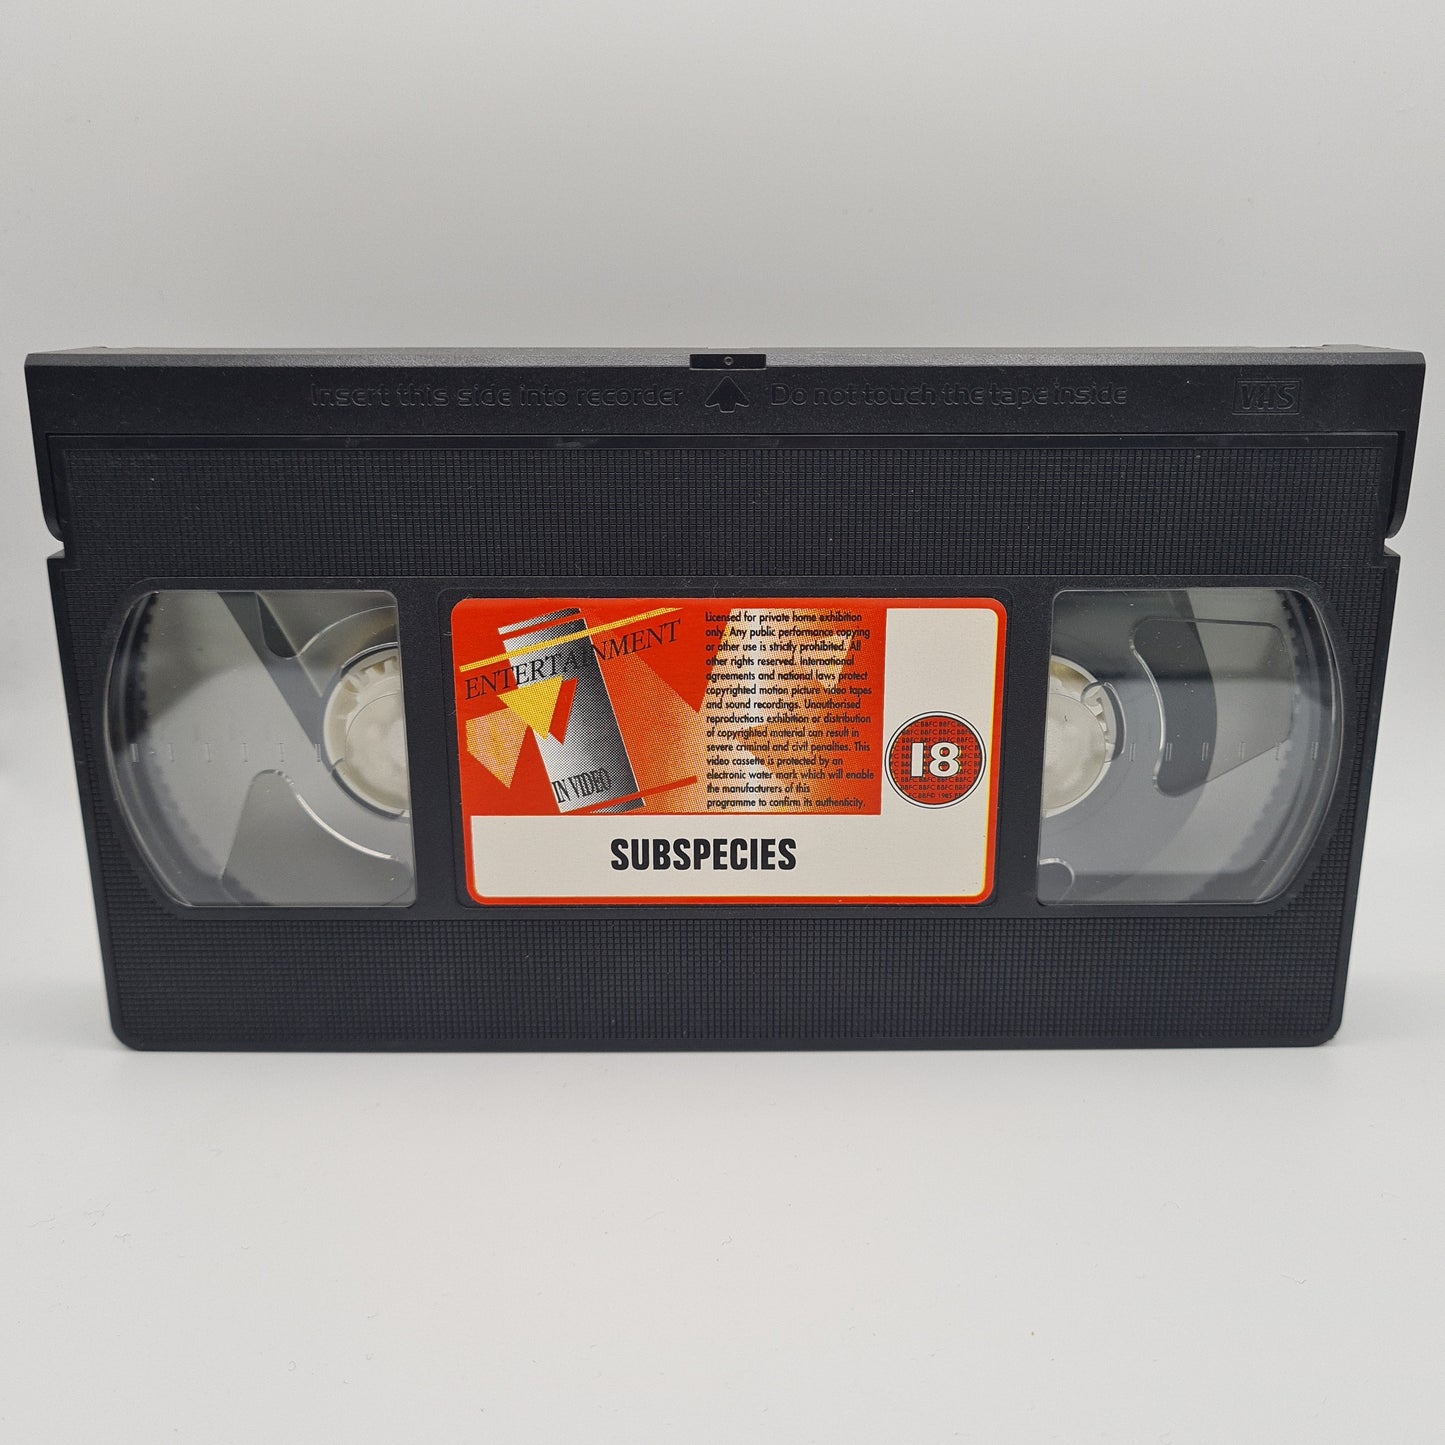 Subspecies VHS